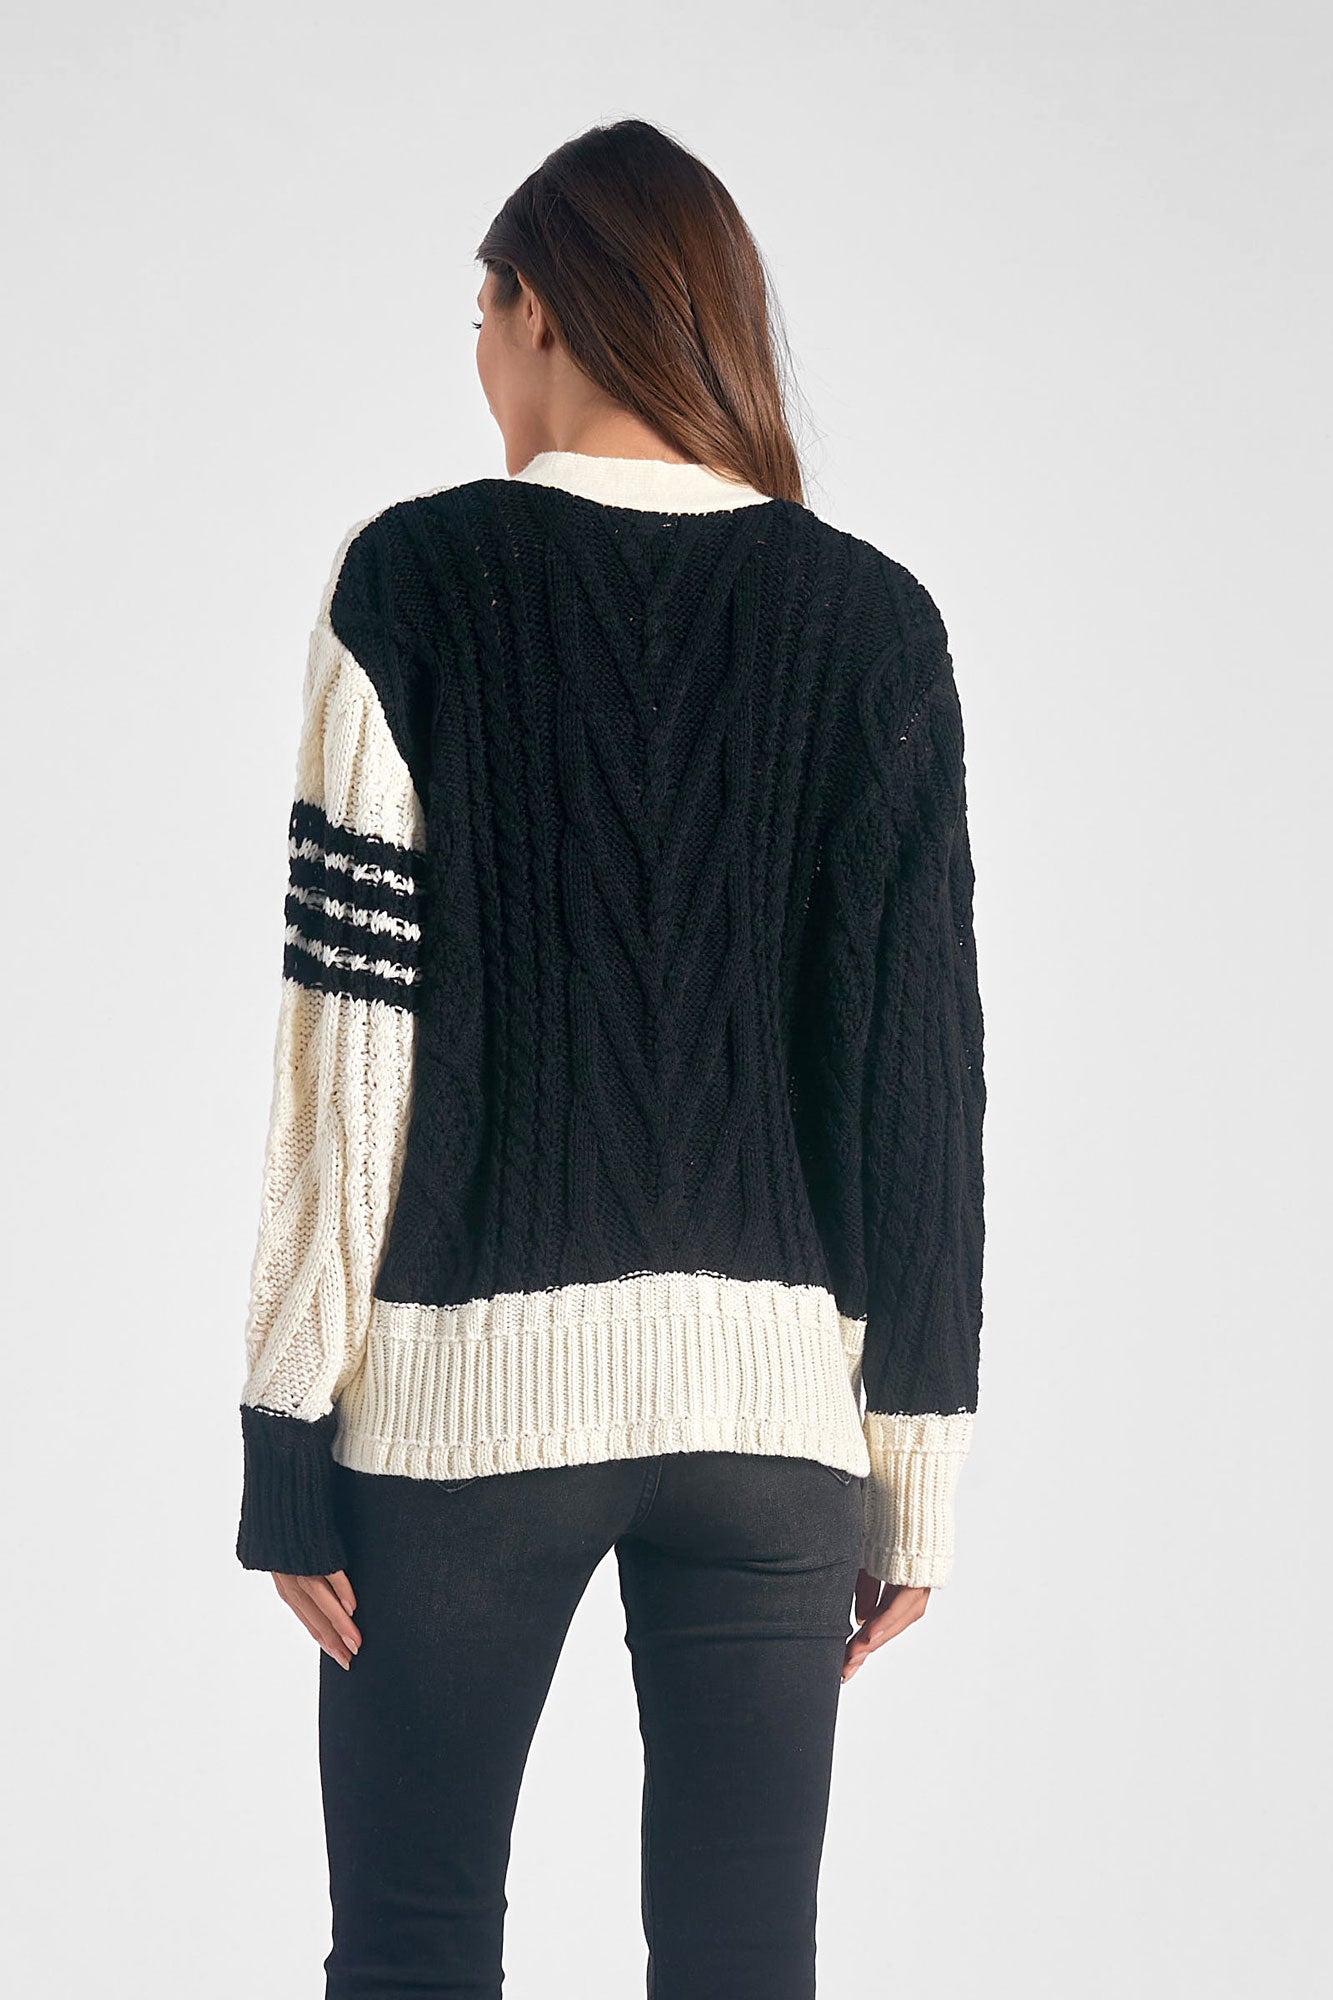 Elan Black White Colorblock Cardigan Sweater